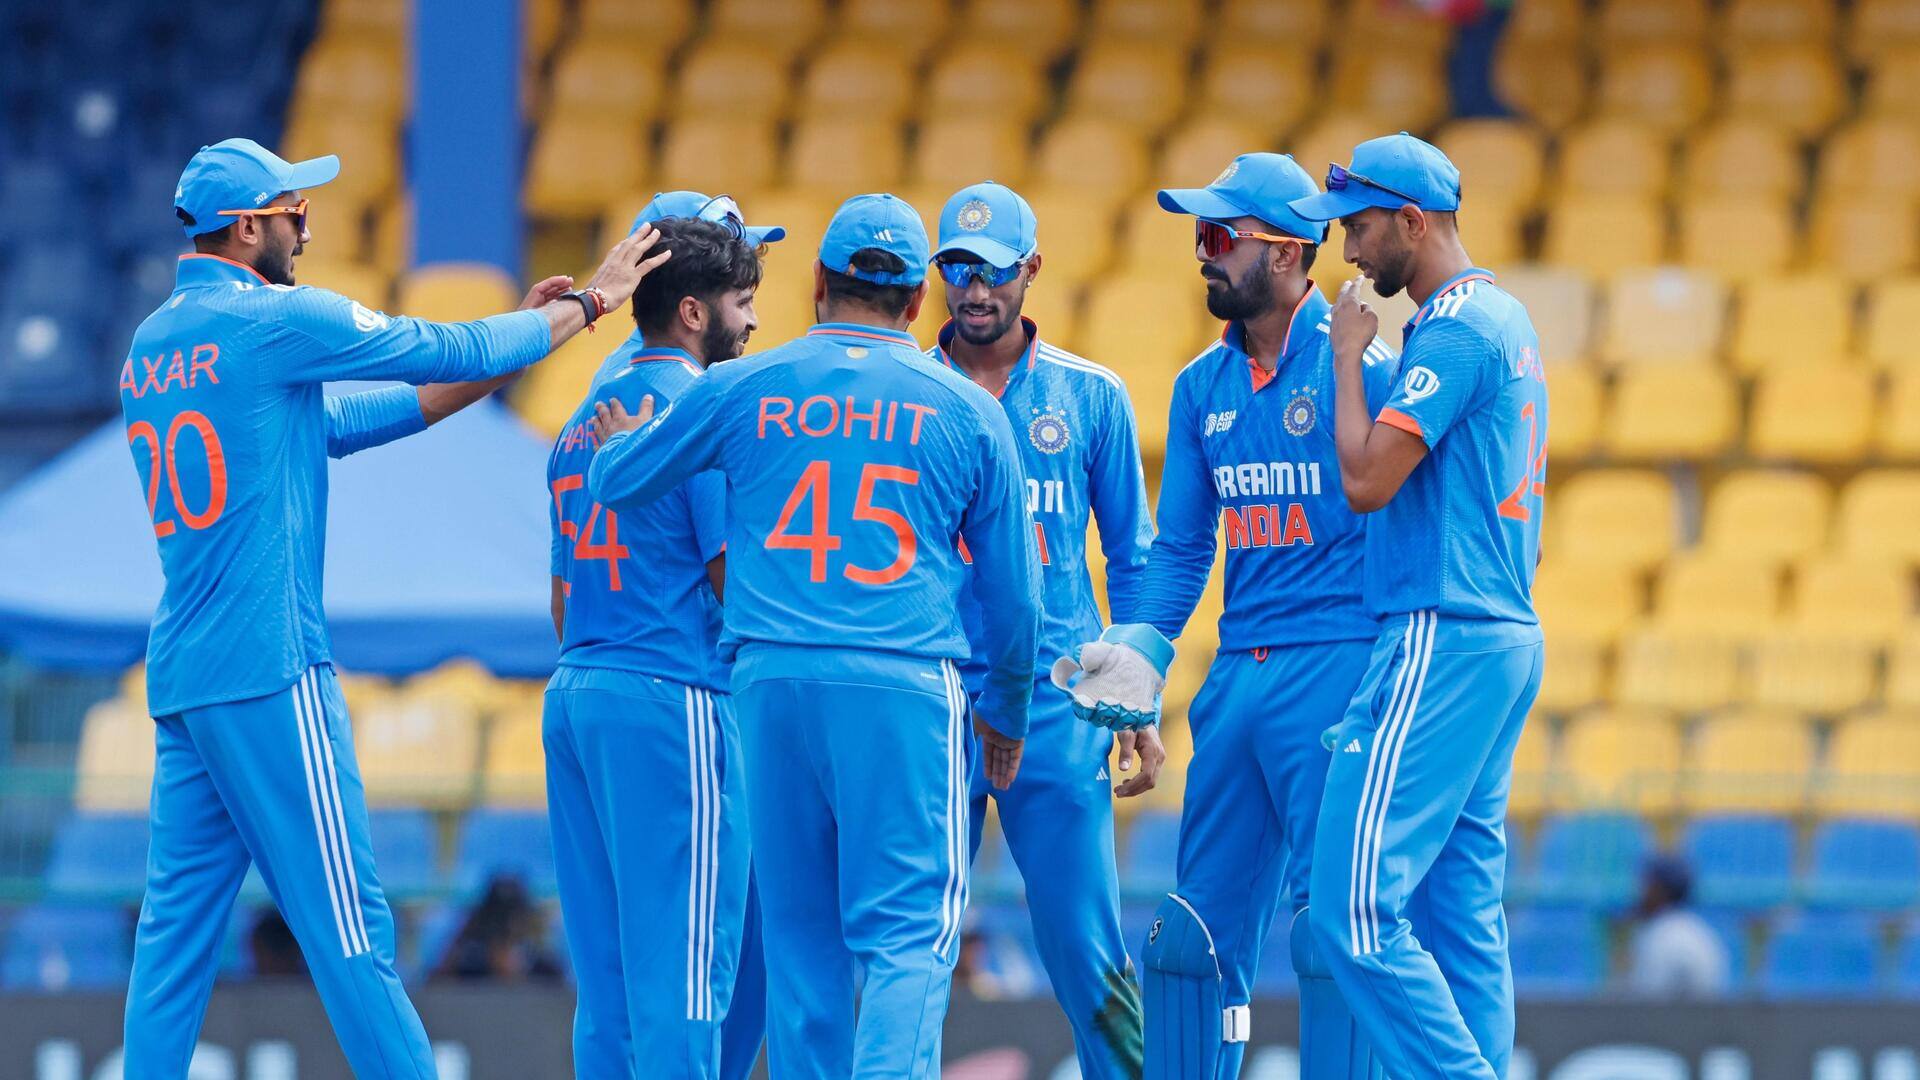 ऑस्ट्रेलिया के खिलाफ वनडे सीरीज के लिए भारतीय टीम घोषित, रविचंद्रन अश्विन की हुई वापसी 